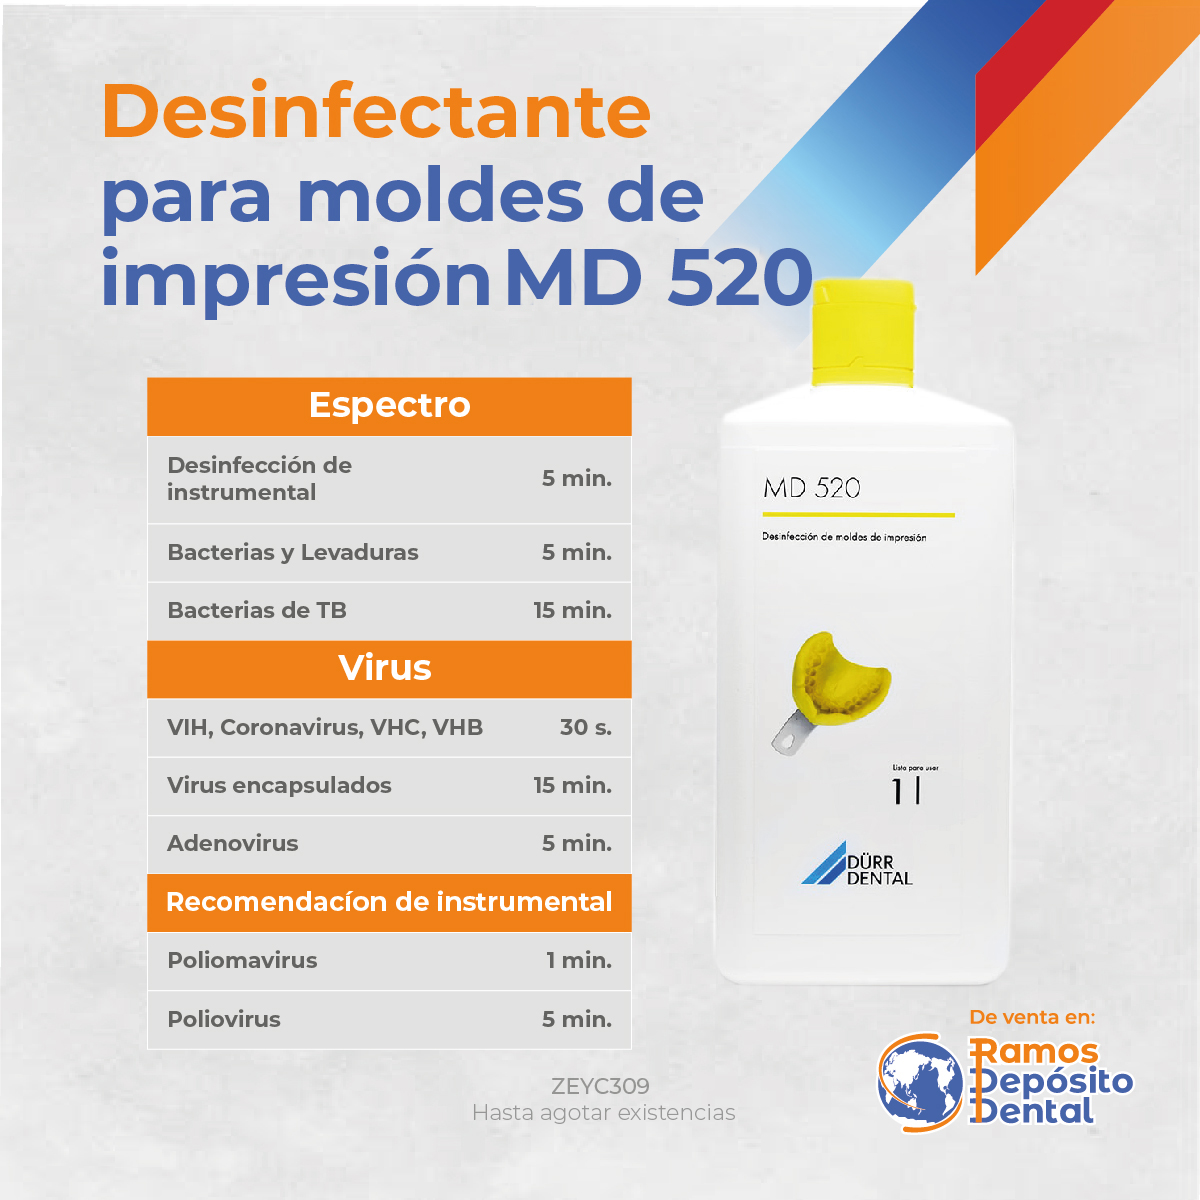 DESINFECTANTE DE IMPRESIONES MD520